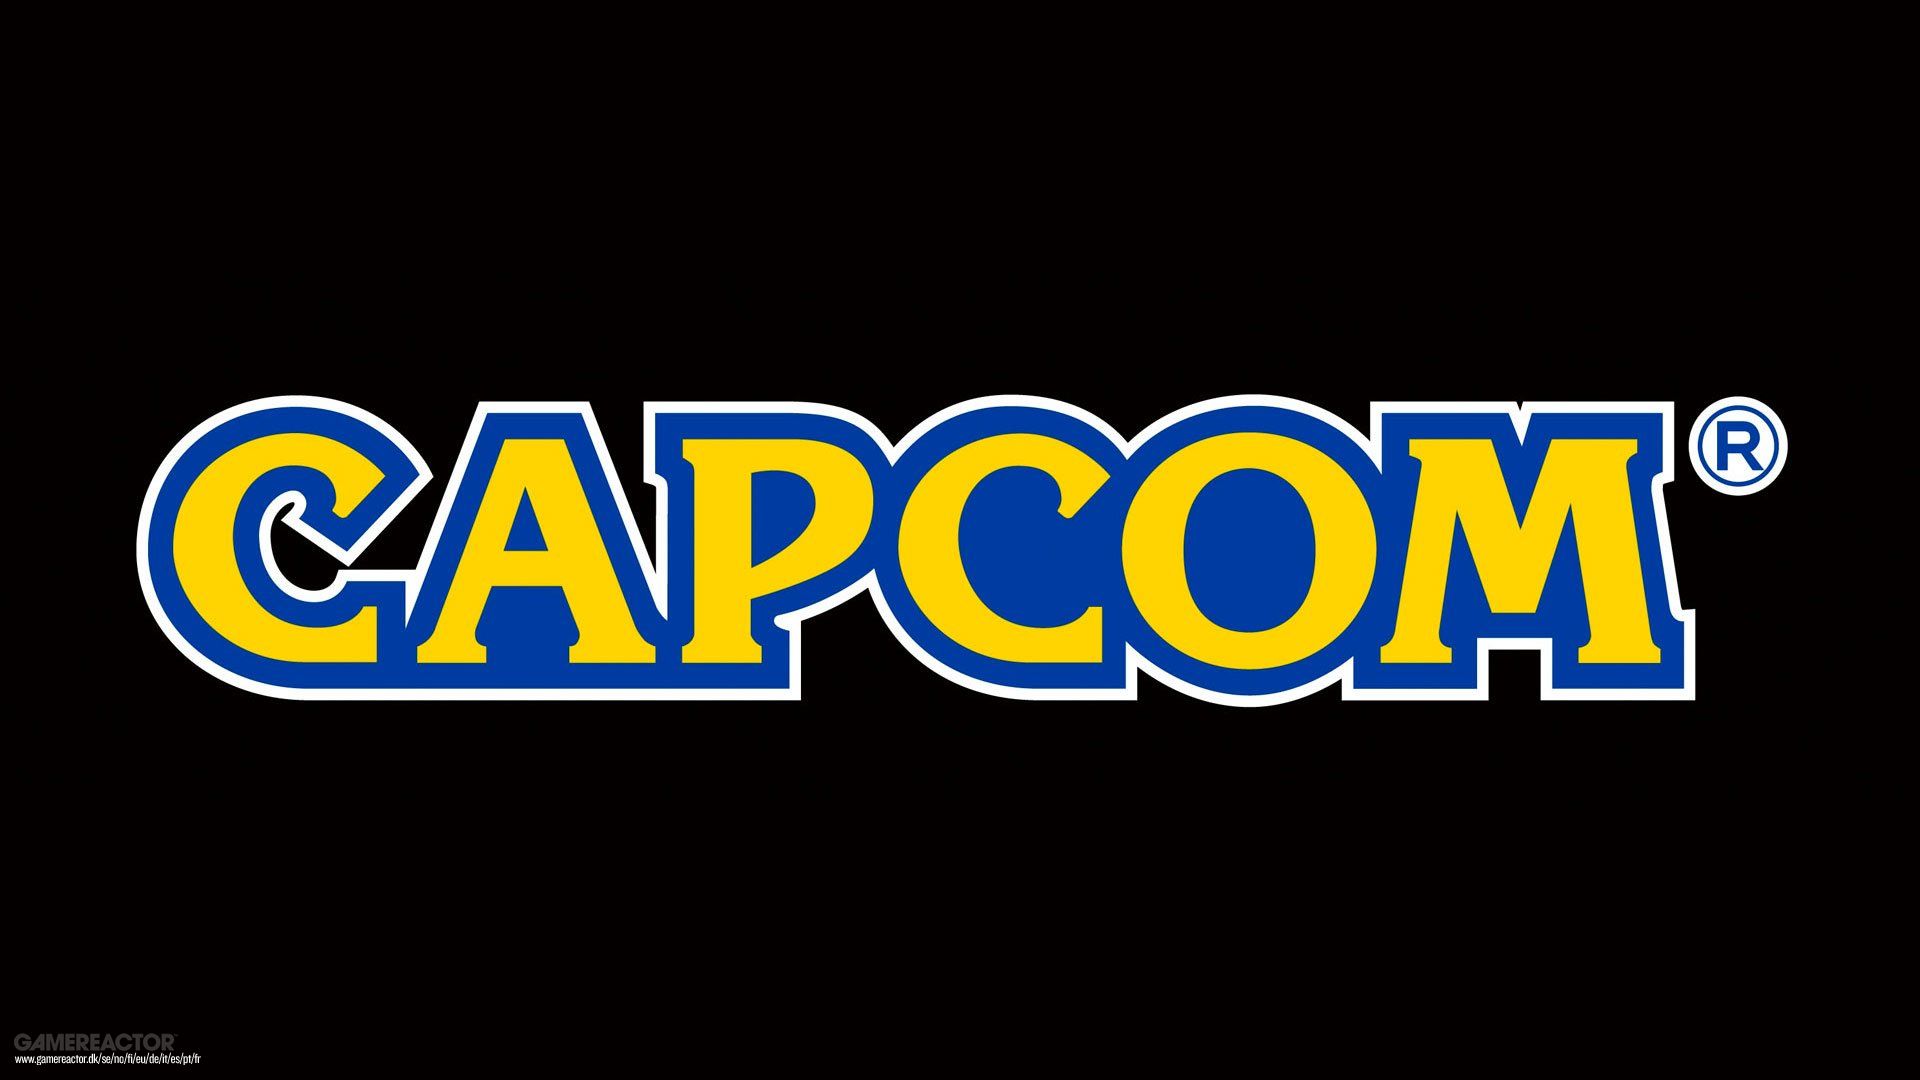 Capcom Co., Ltd.: Long Way Home